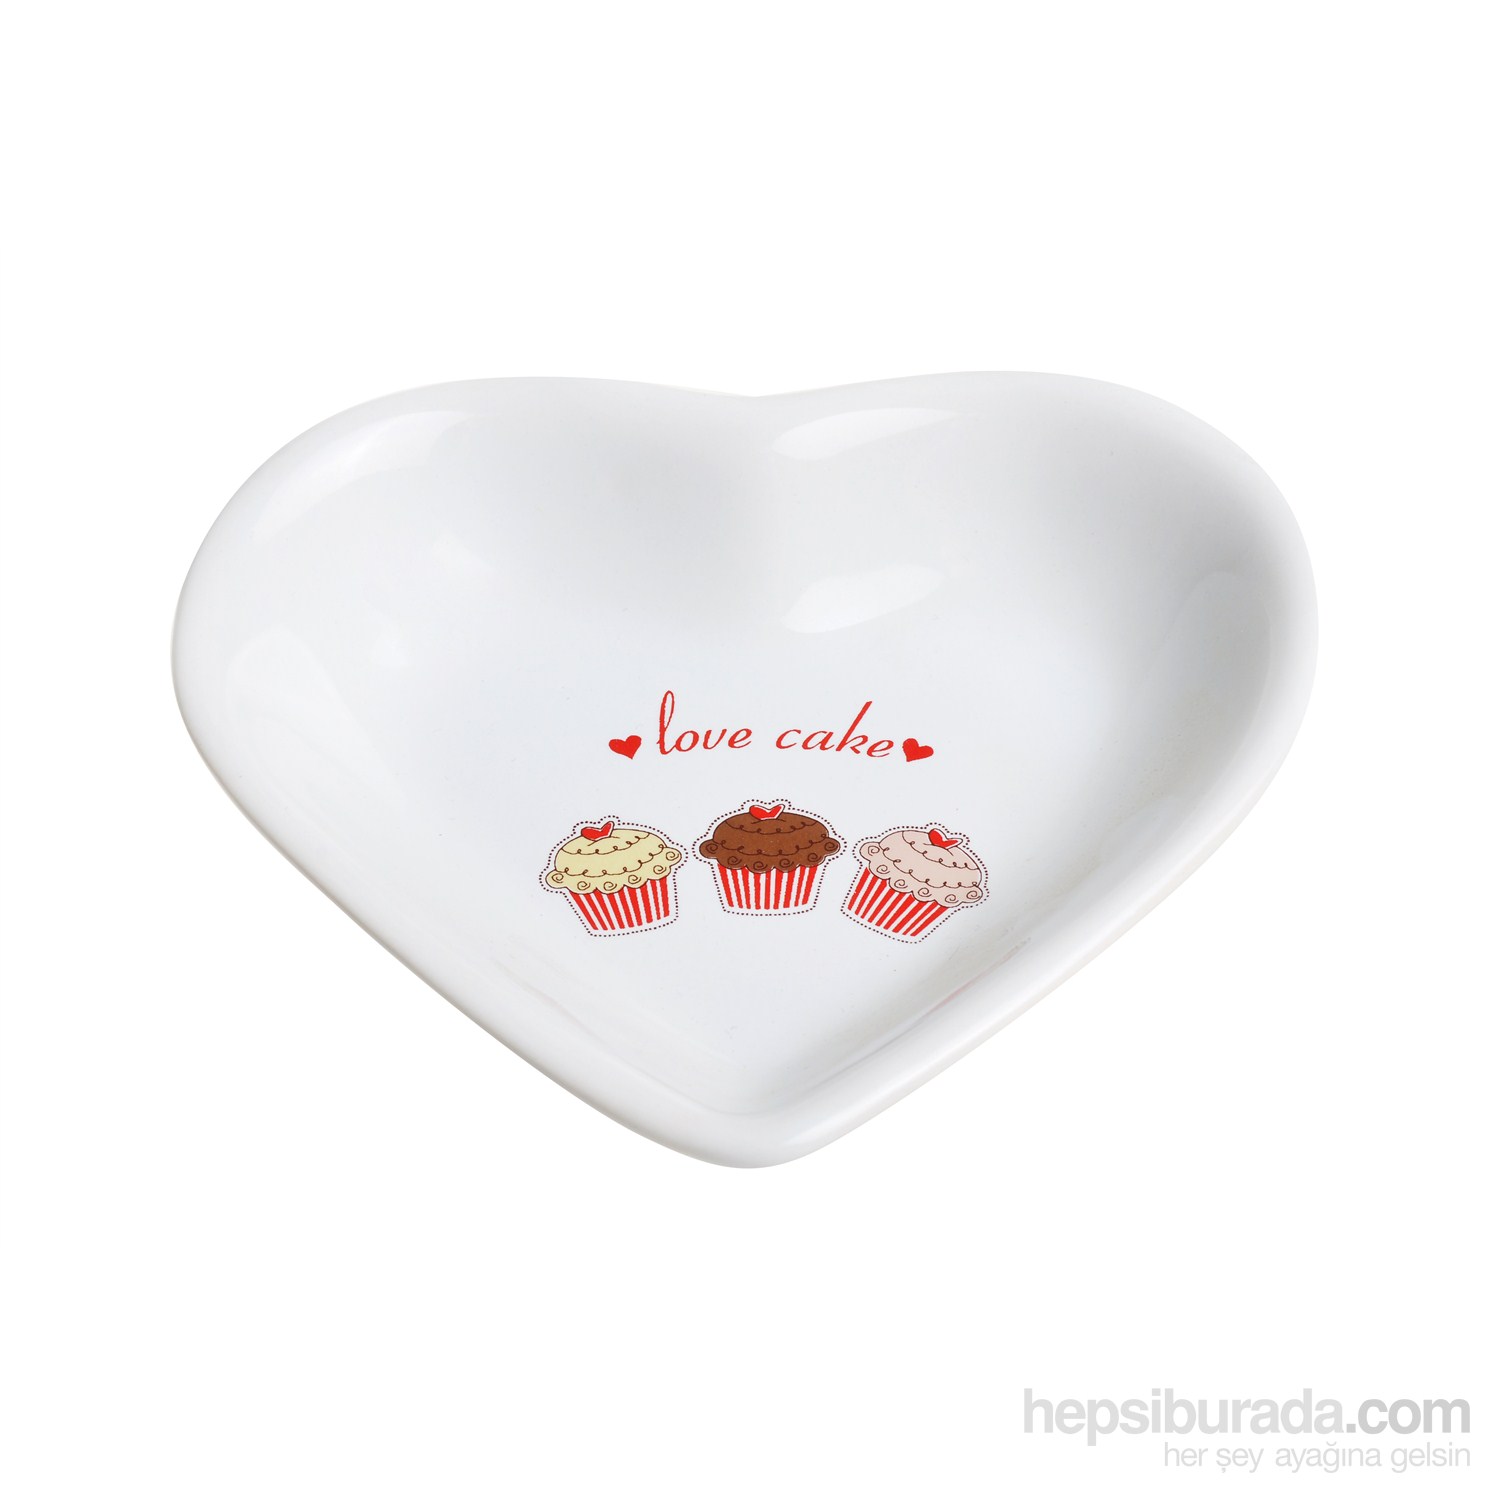 Keramika Cerezlık Kalp 14 Cm Beyaz 004 Fruıt Cake 14 Cm Kalp Cerezlık